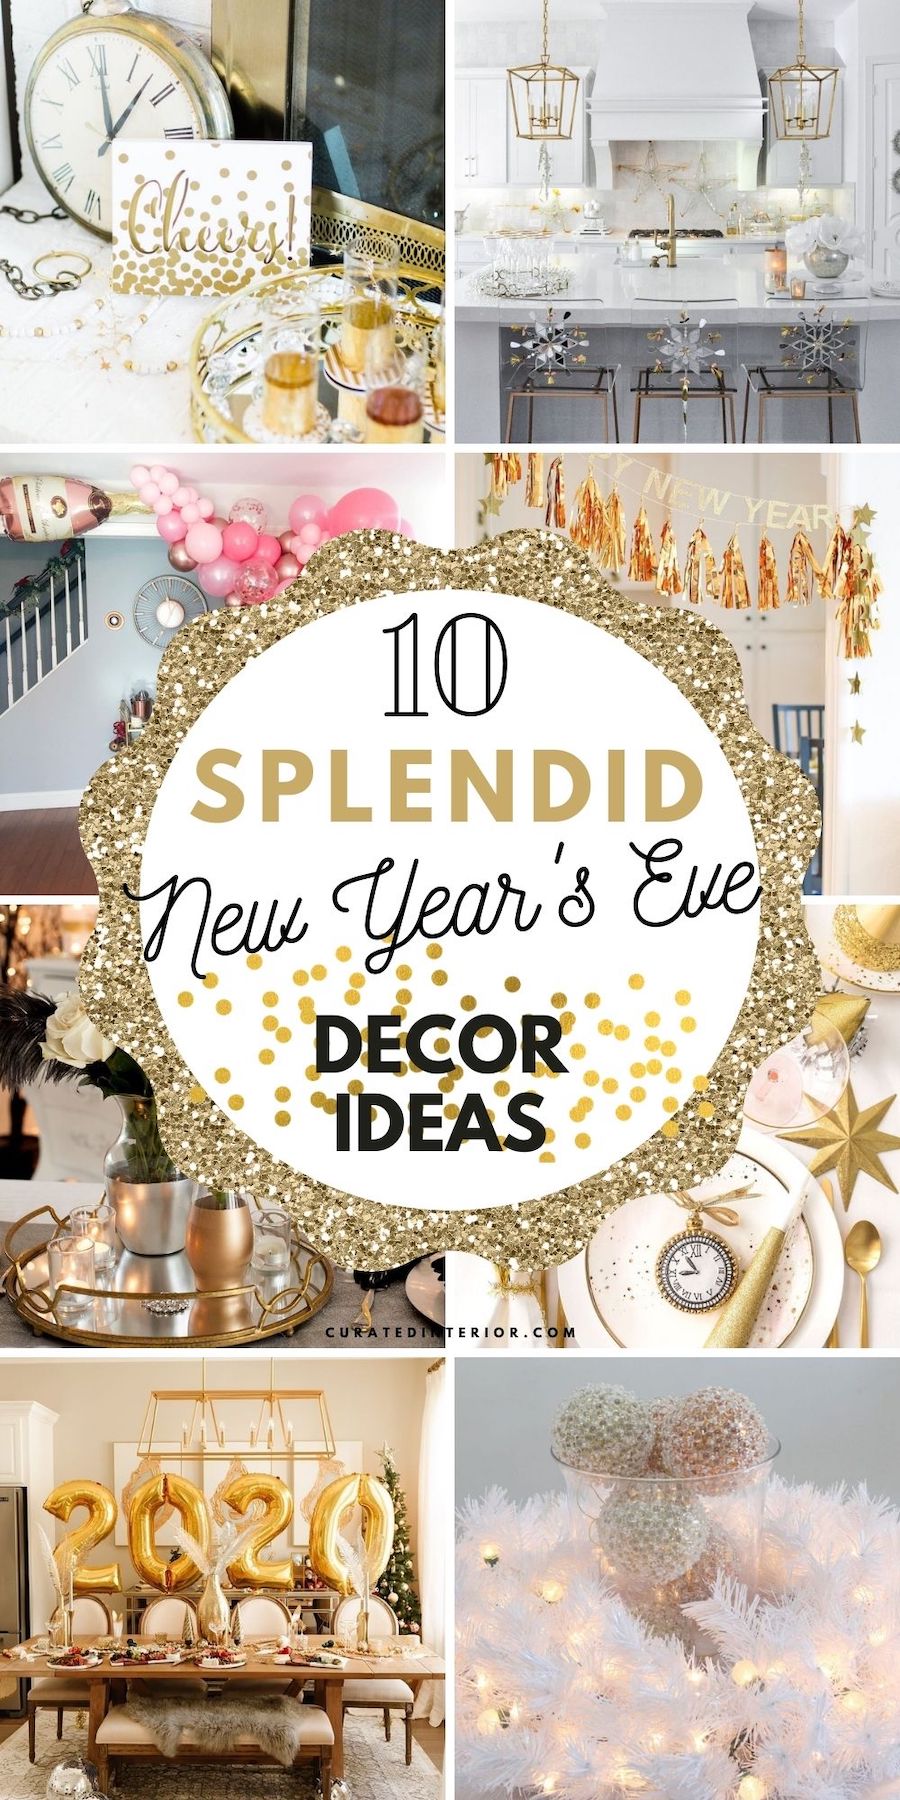 10 Splendid New Year's Eve Home Decor Ideas